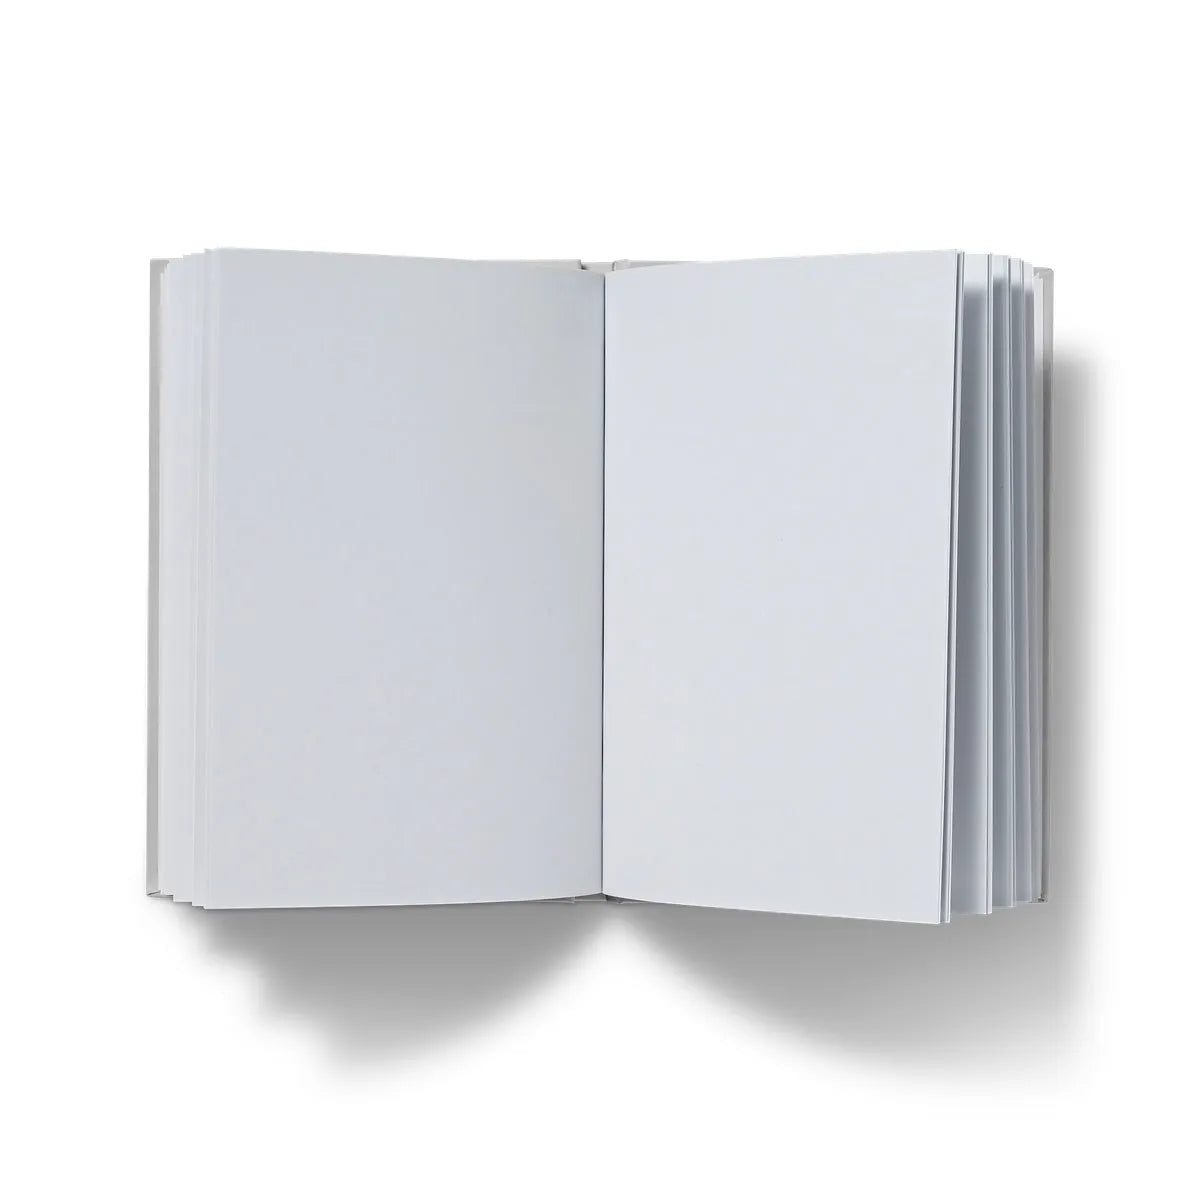 Sagittaire By Maurice Pillard Verneuil Hardback Journal - Notebooks & Notepads - Aesthetic Art